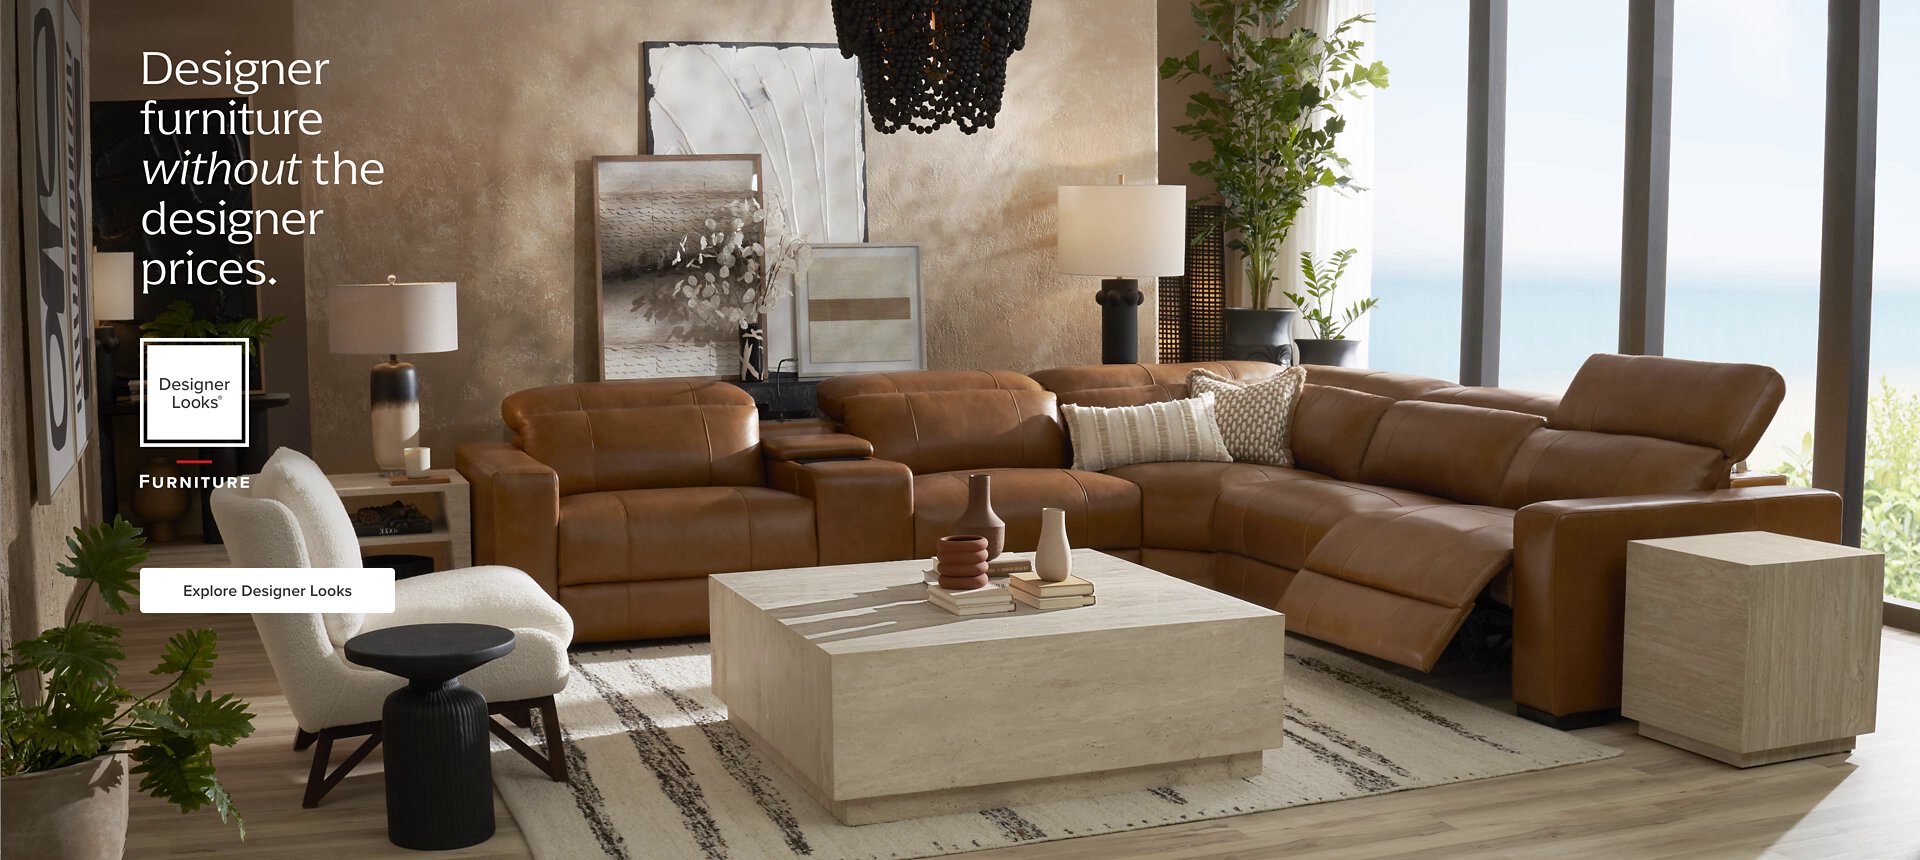 Designer Furniture without the Designer Prices. Explore Designer Looks Living Room Furniture